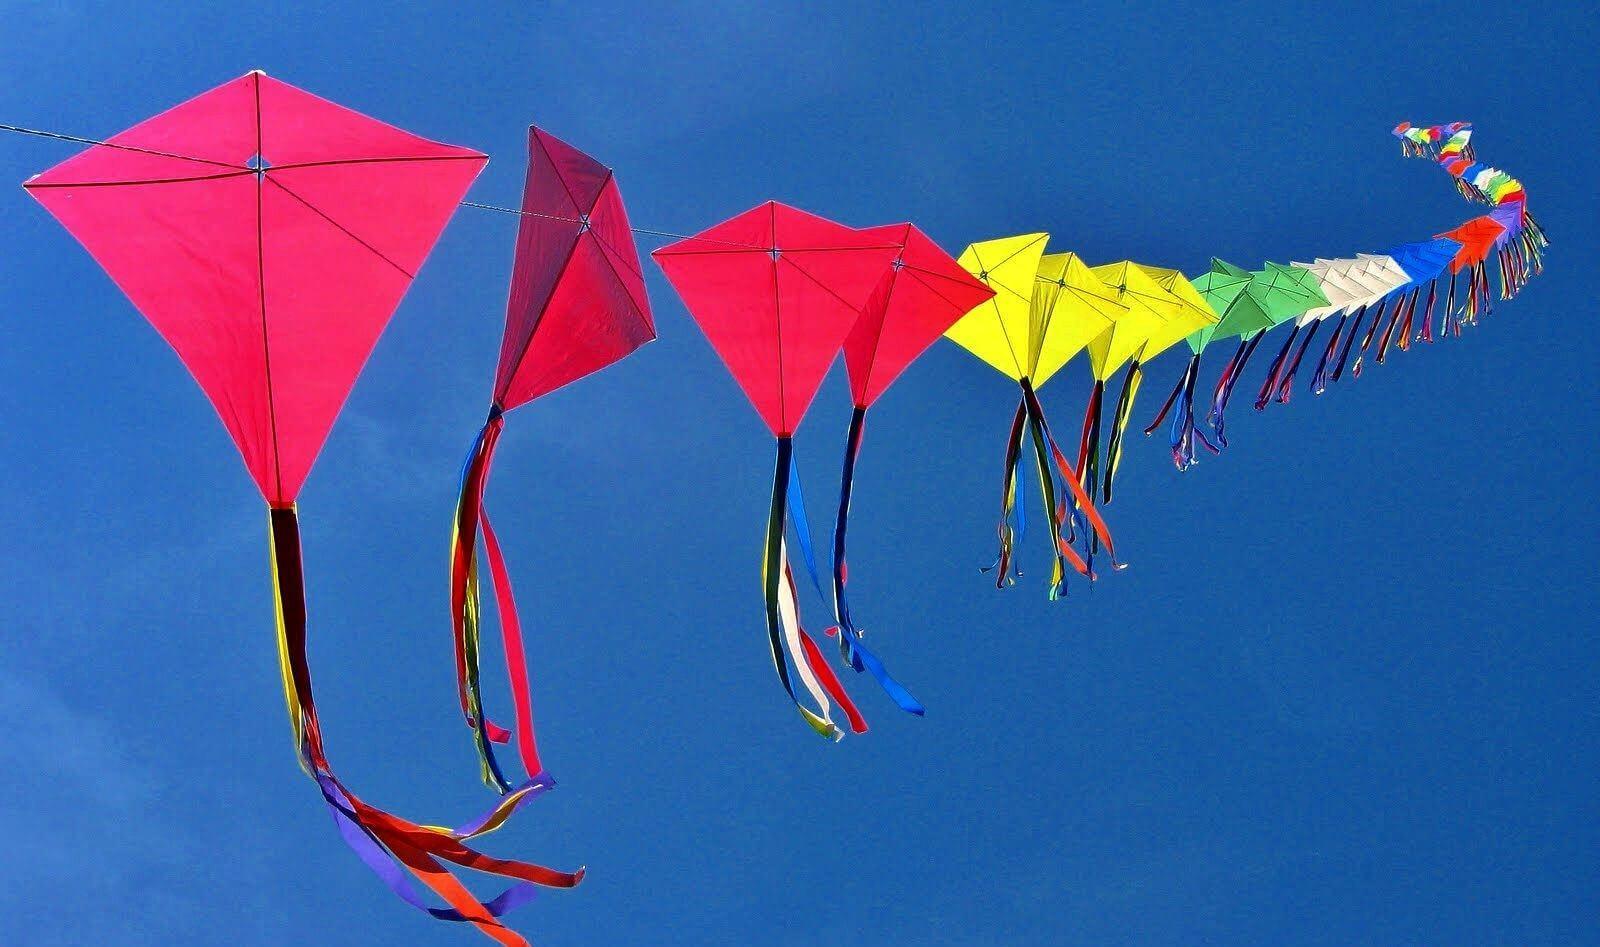 मकर संक्रांति के दिन क्यों उड़ाते हैं पतंग, जानिए